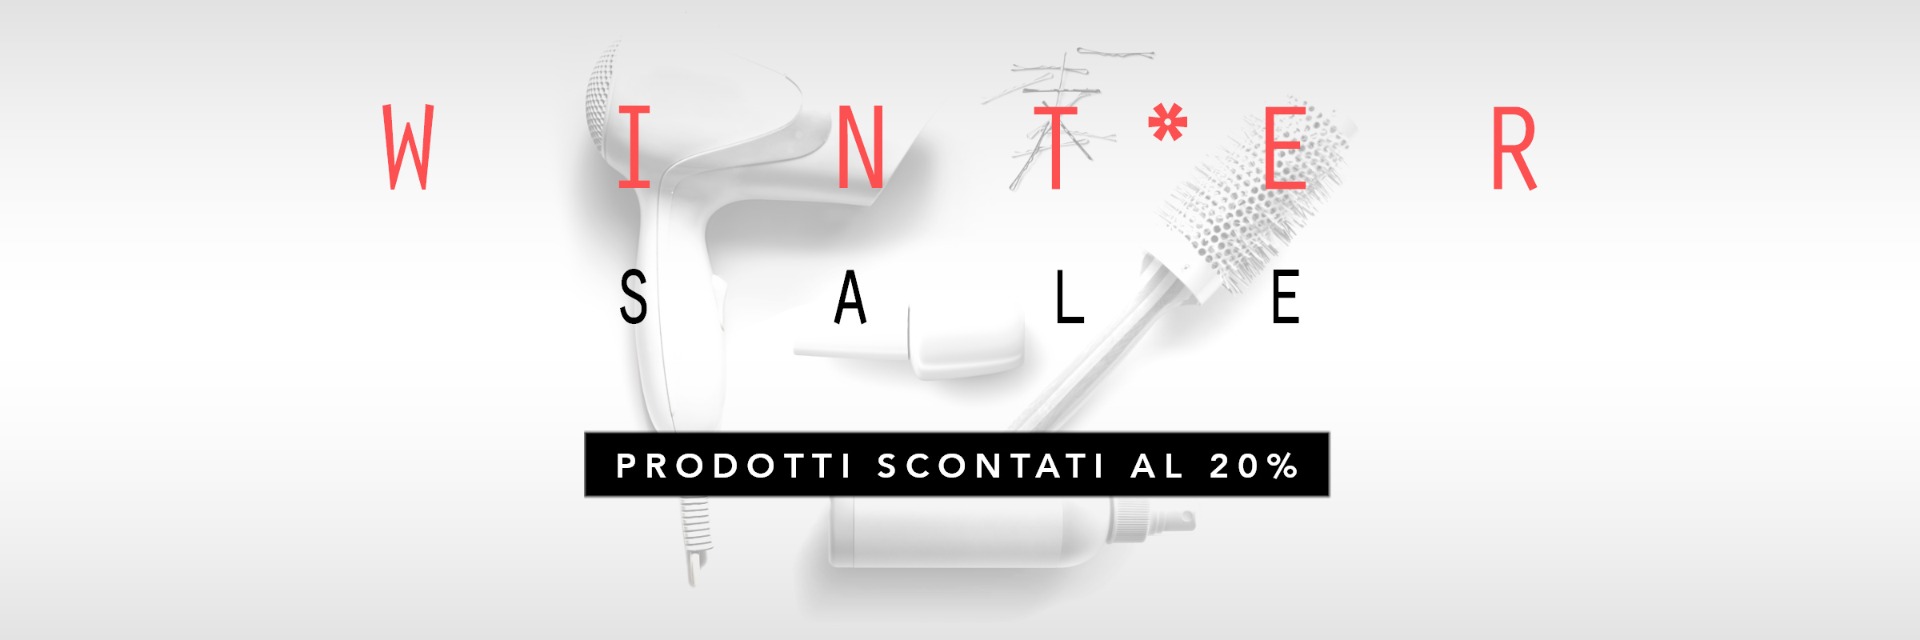 TRILAB Winter Sale 2021 - Prodotti Scontati fino al 20%